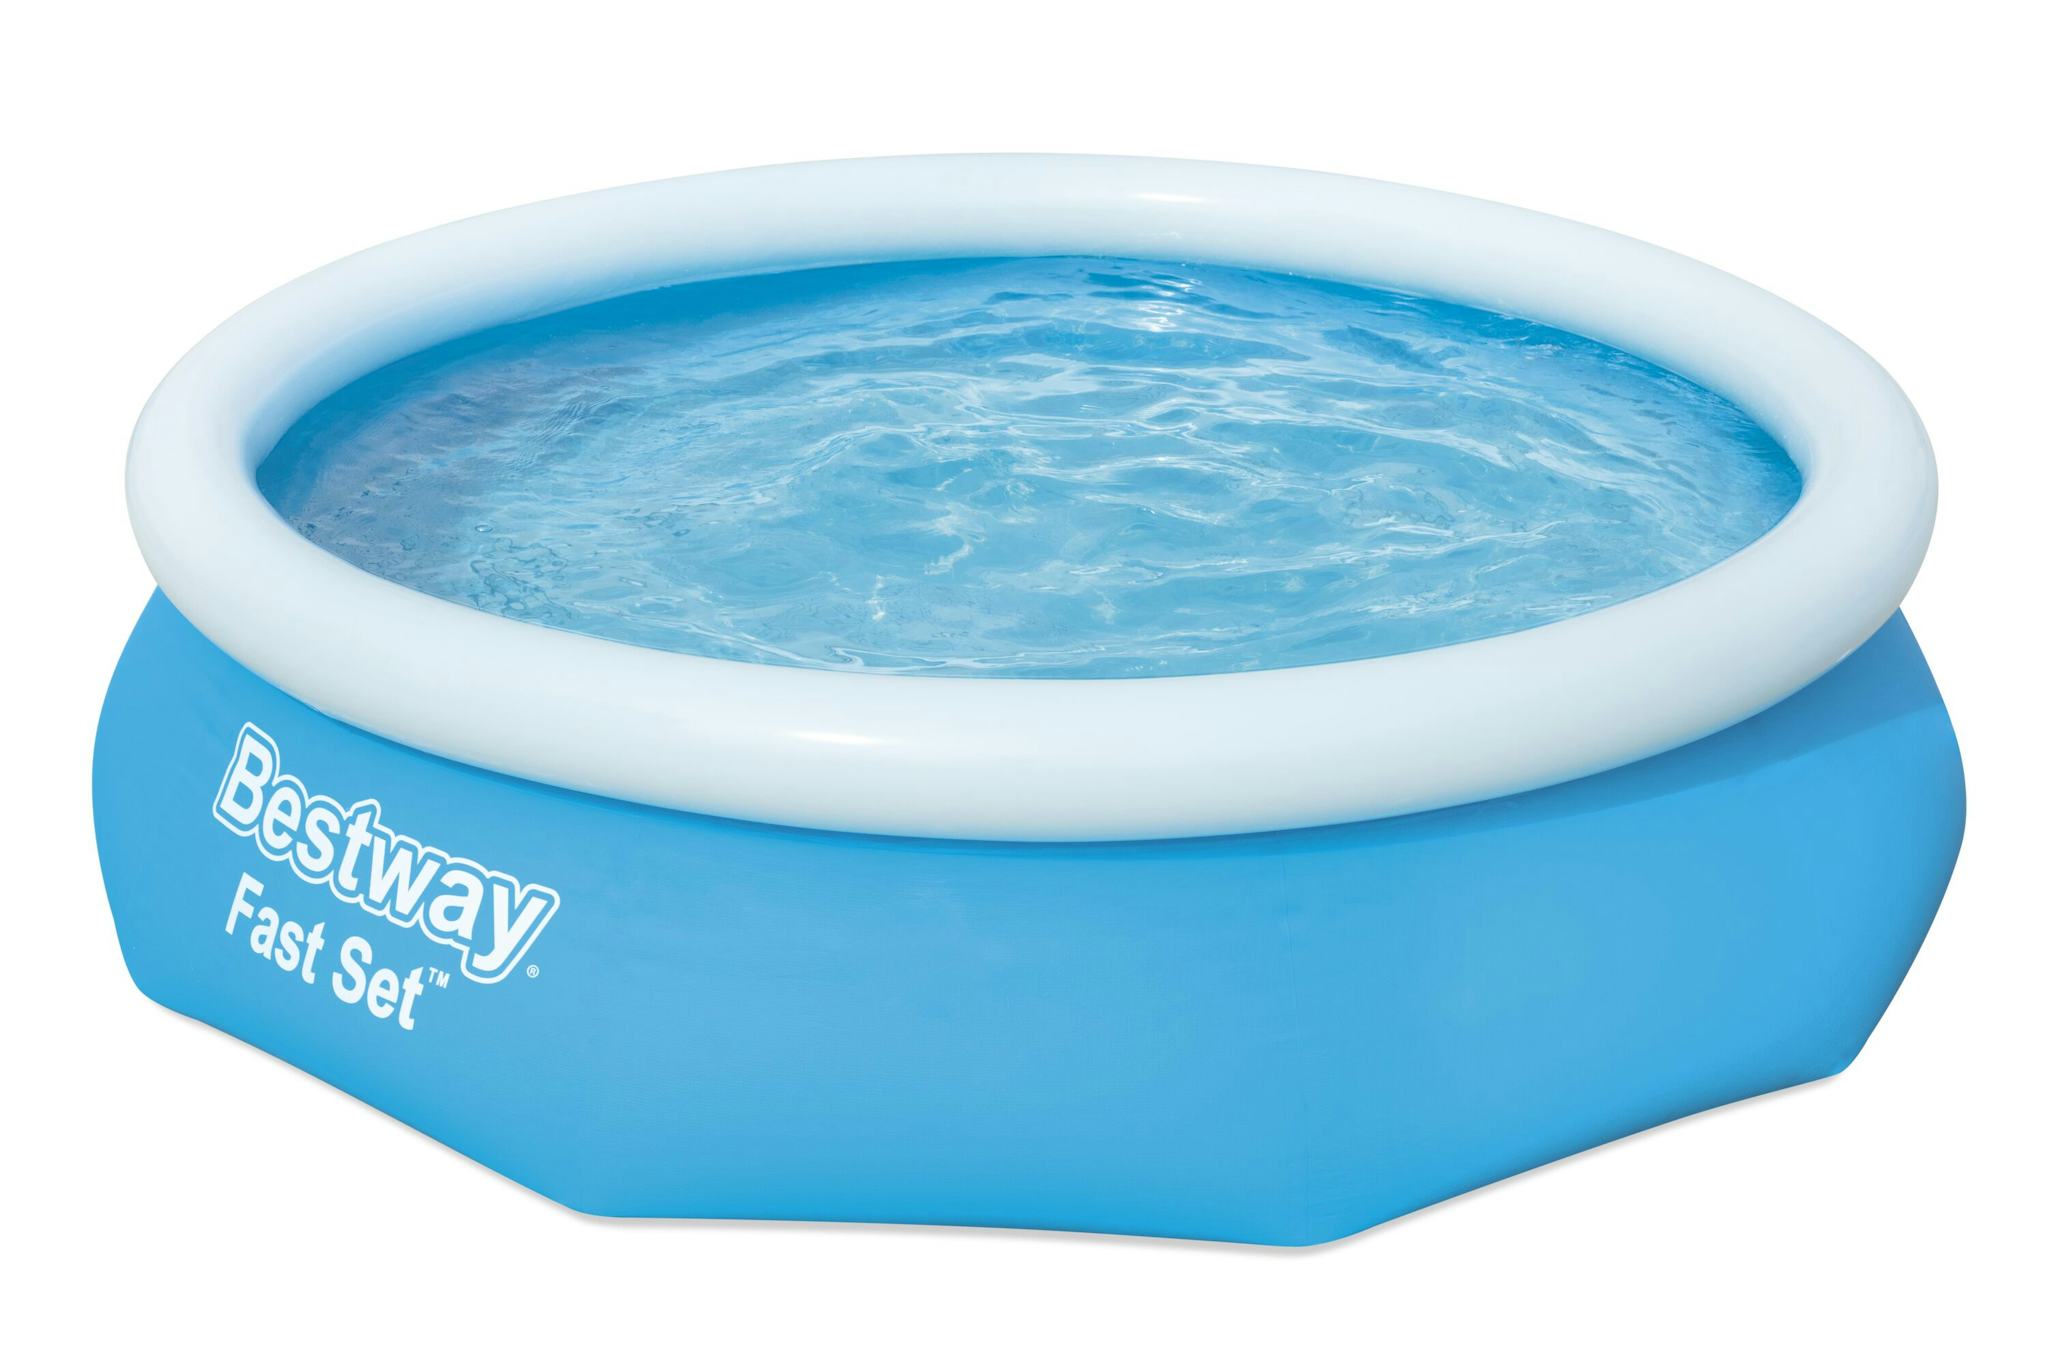 Bovengronds zwembad Fast Set bovengrondse ronde opblaasbare set van 305x76 cm blauw Bestway 1